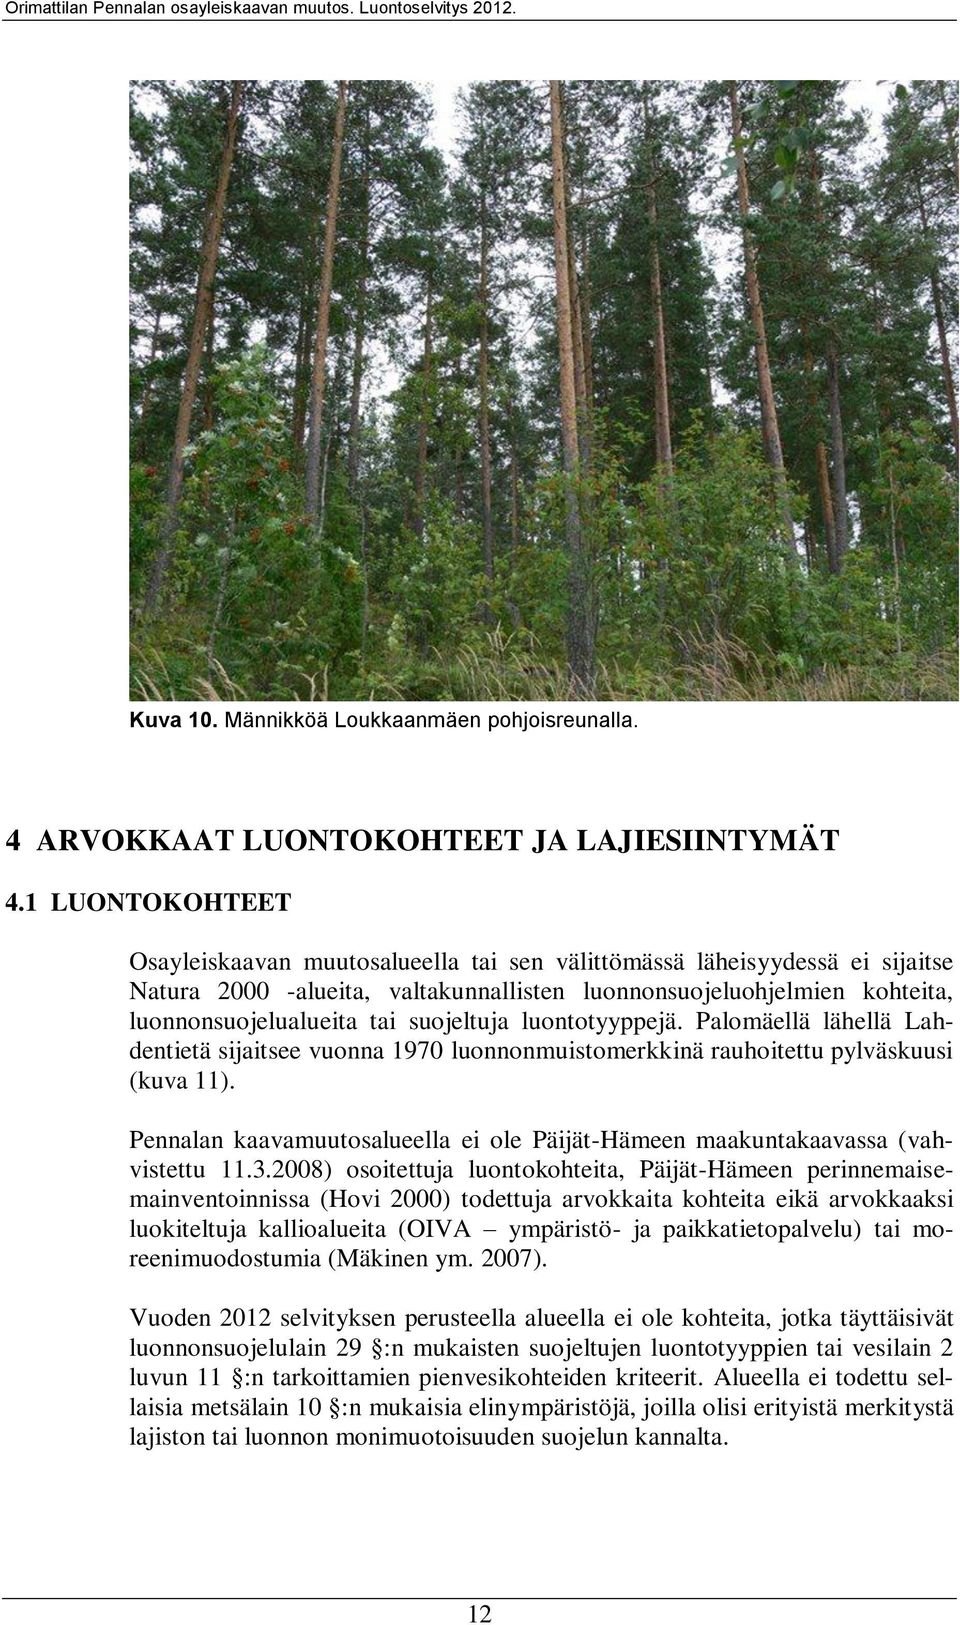 suojeltuja luontotyyppejä. Palomäellä lähellä Lahdentietä sijaitsee vuonna 1970 luonnonmuistomerkkinä rauhoitettu pylväskuusi (kuva 11).